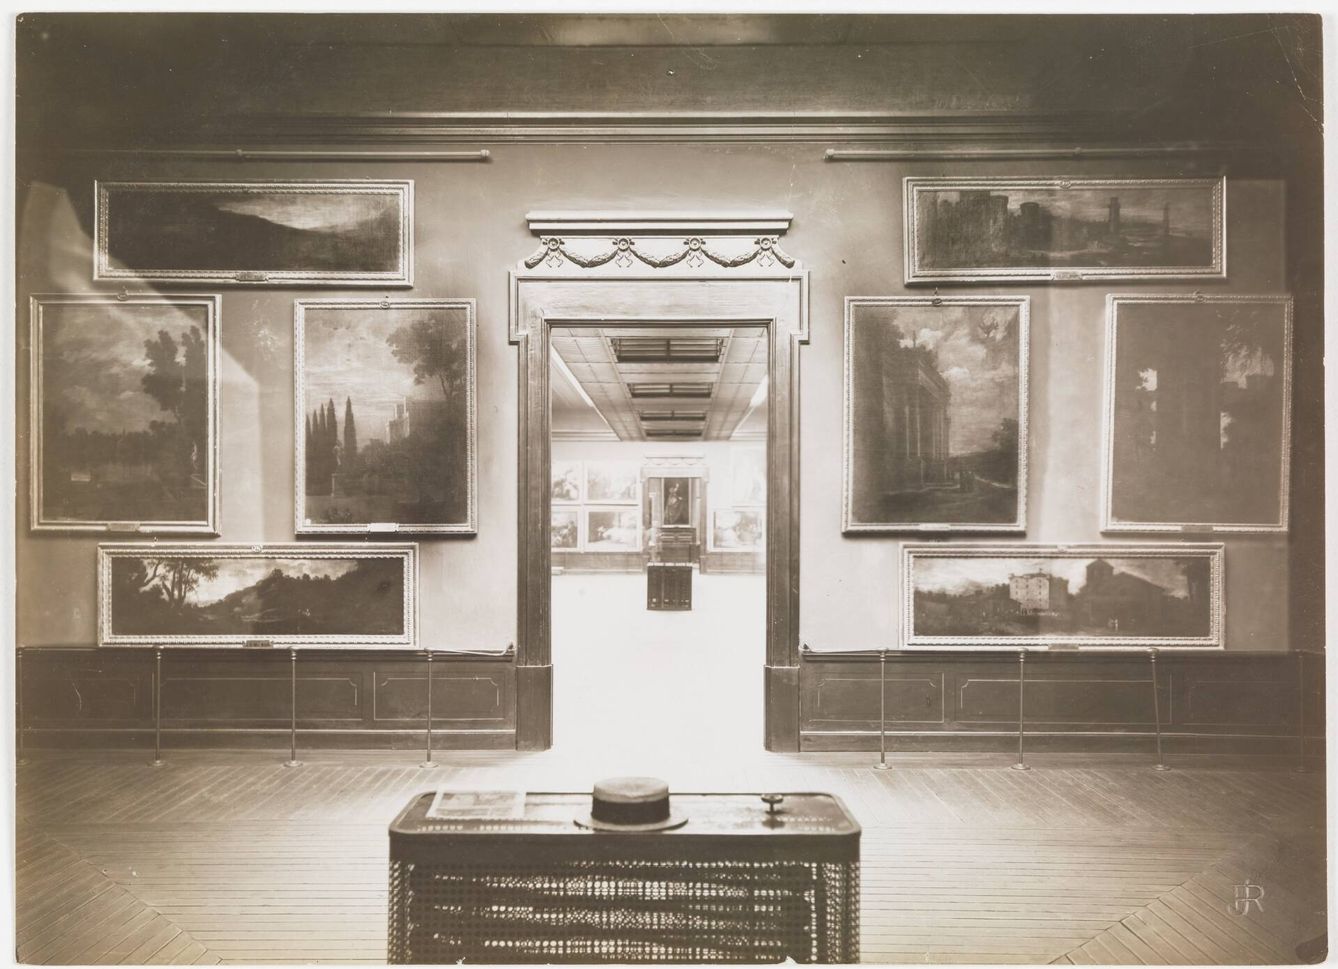 'Museo del Prado, vista de una sala con paisajes', José Lacoste y Borde, 1907-1915. (Museo del Prado)